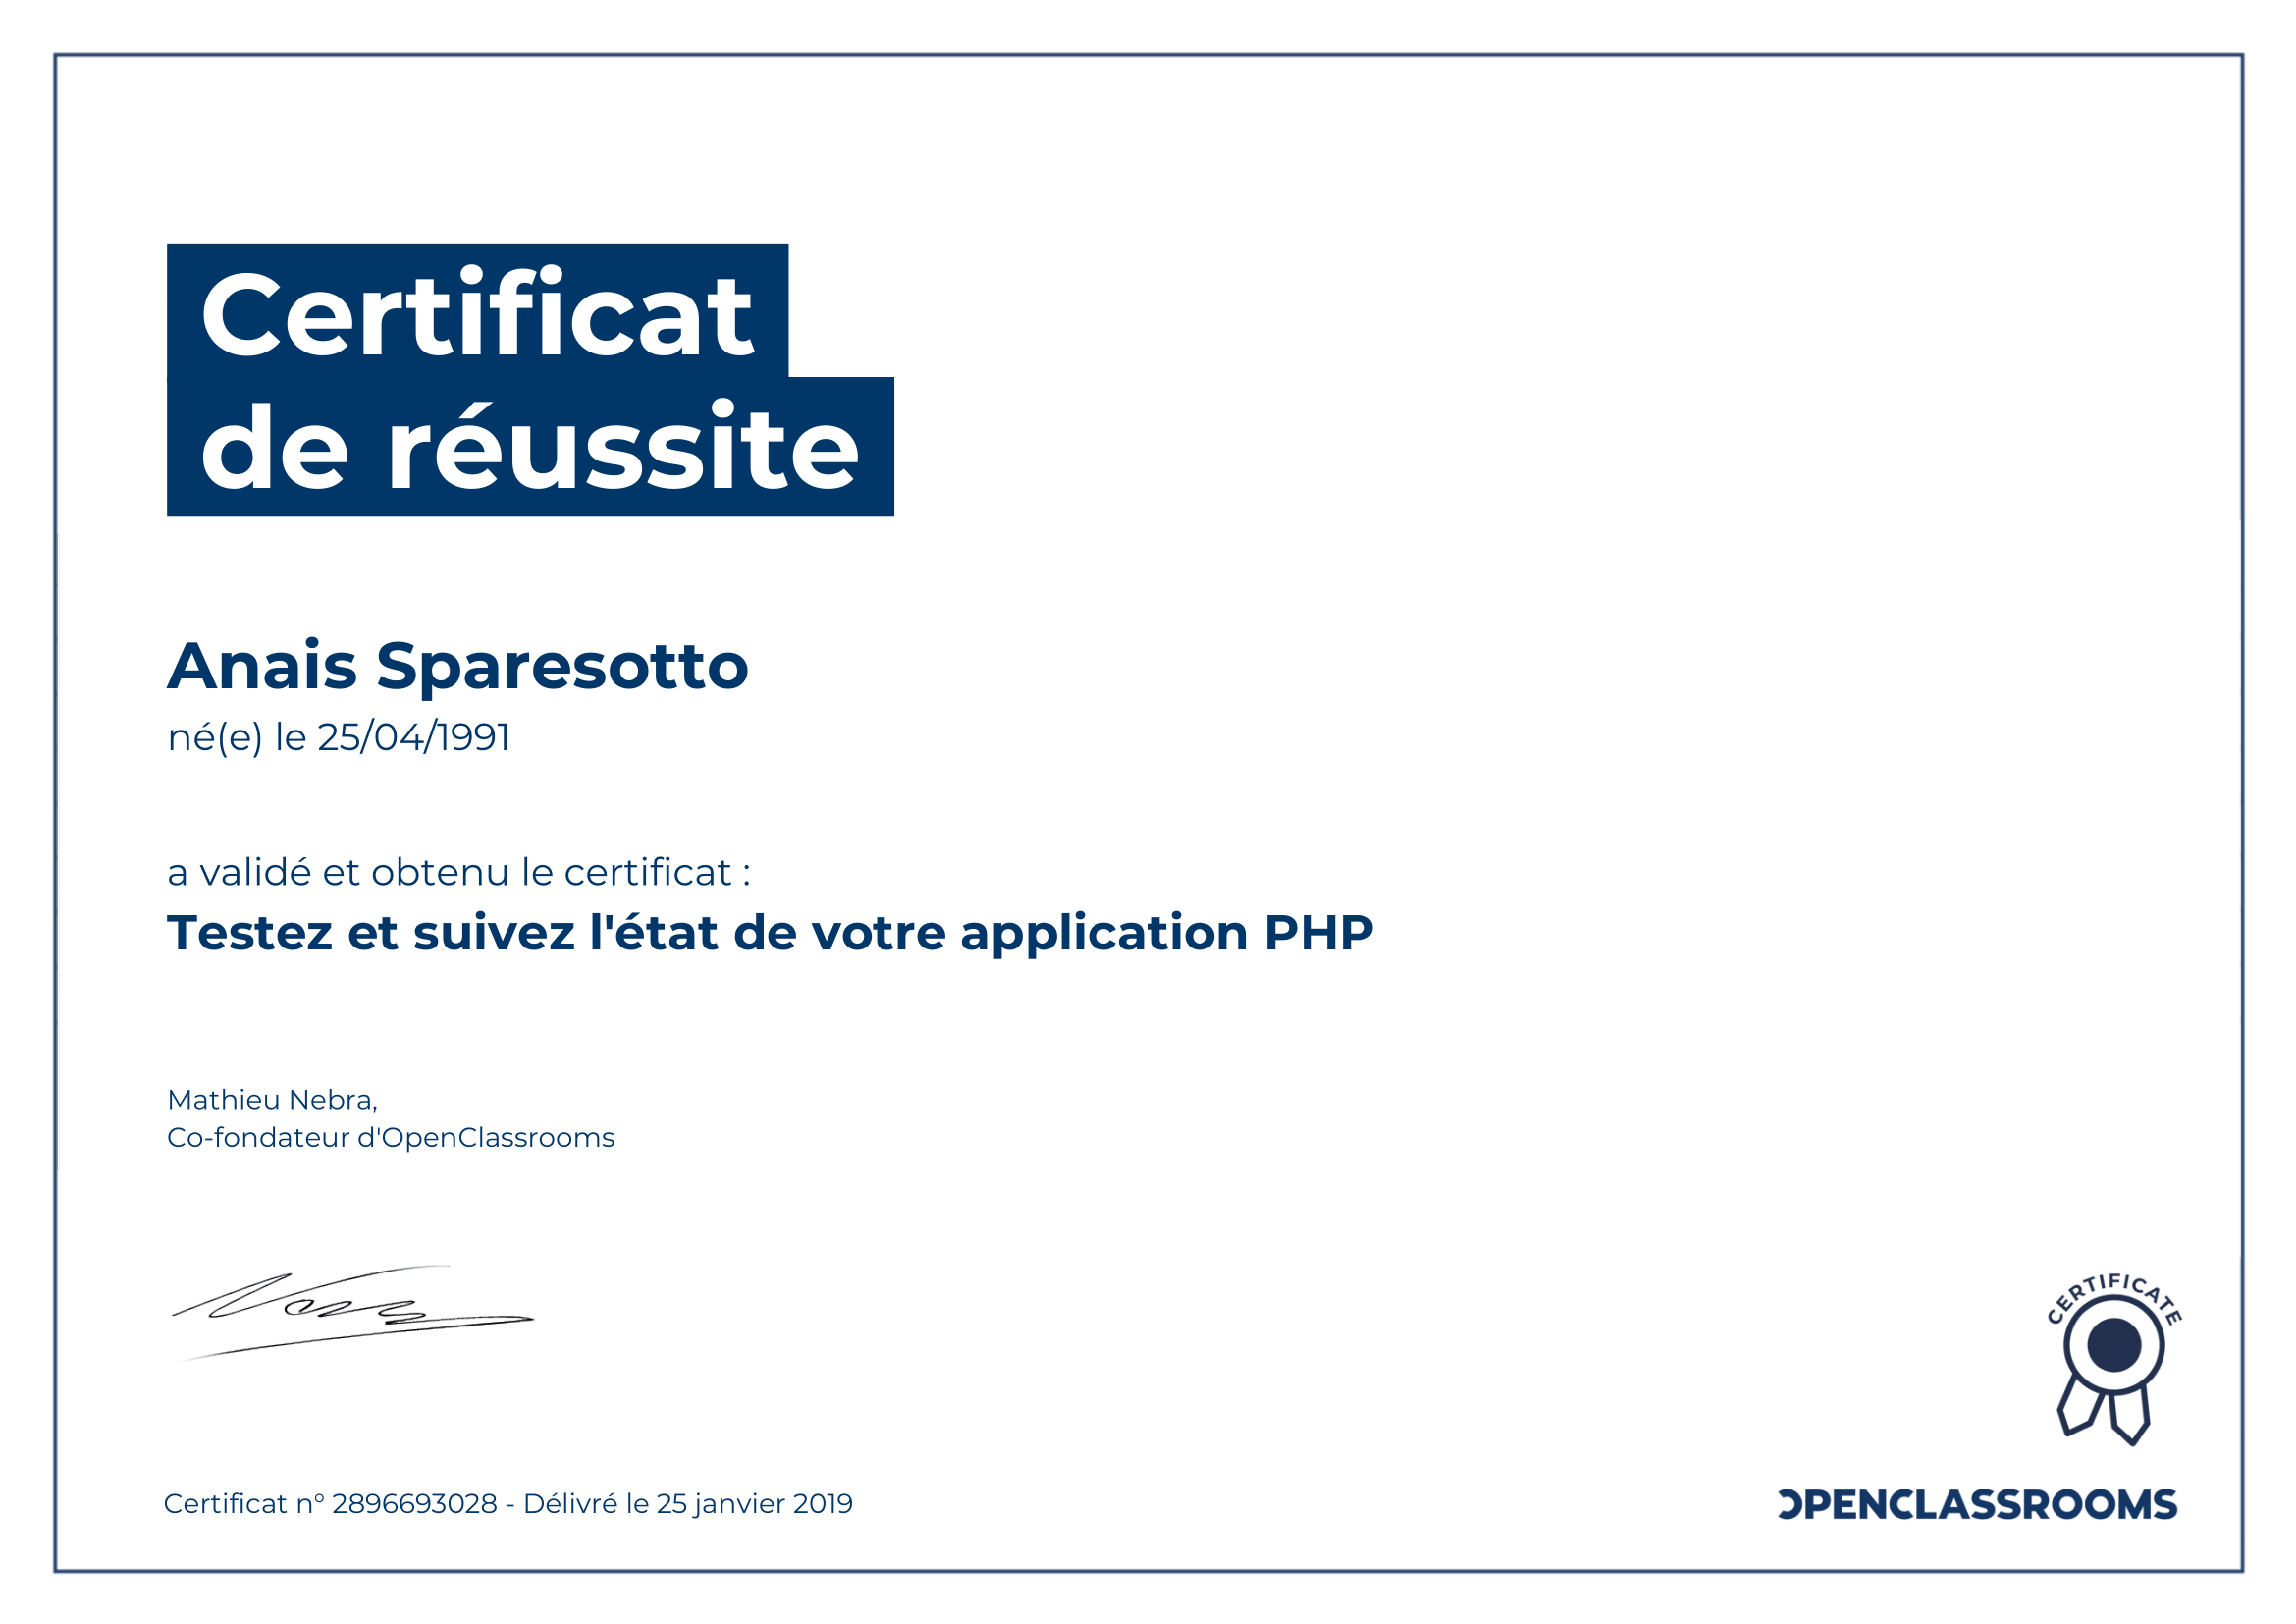 certificat de réussite test application php sparesotto anais